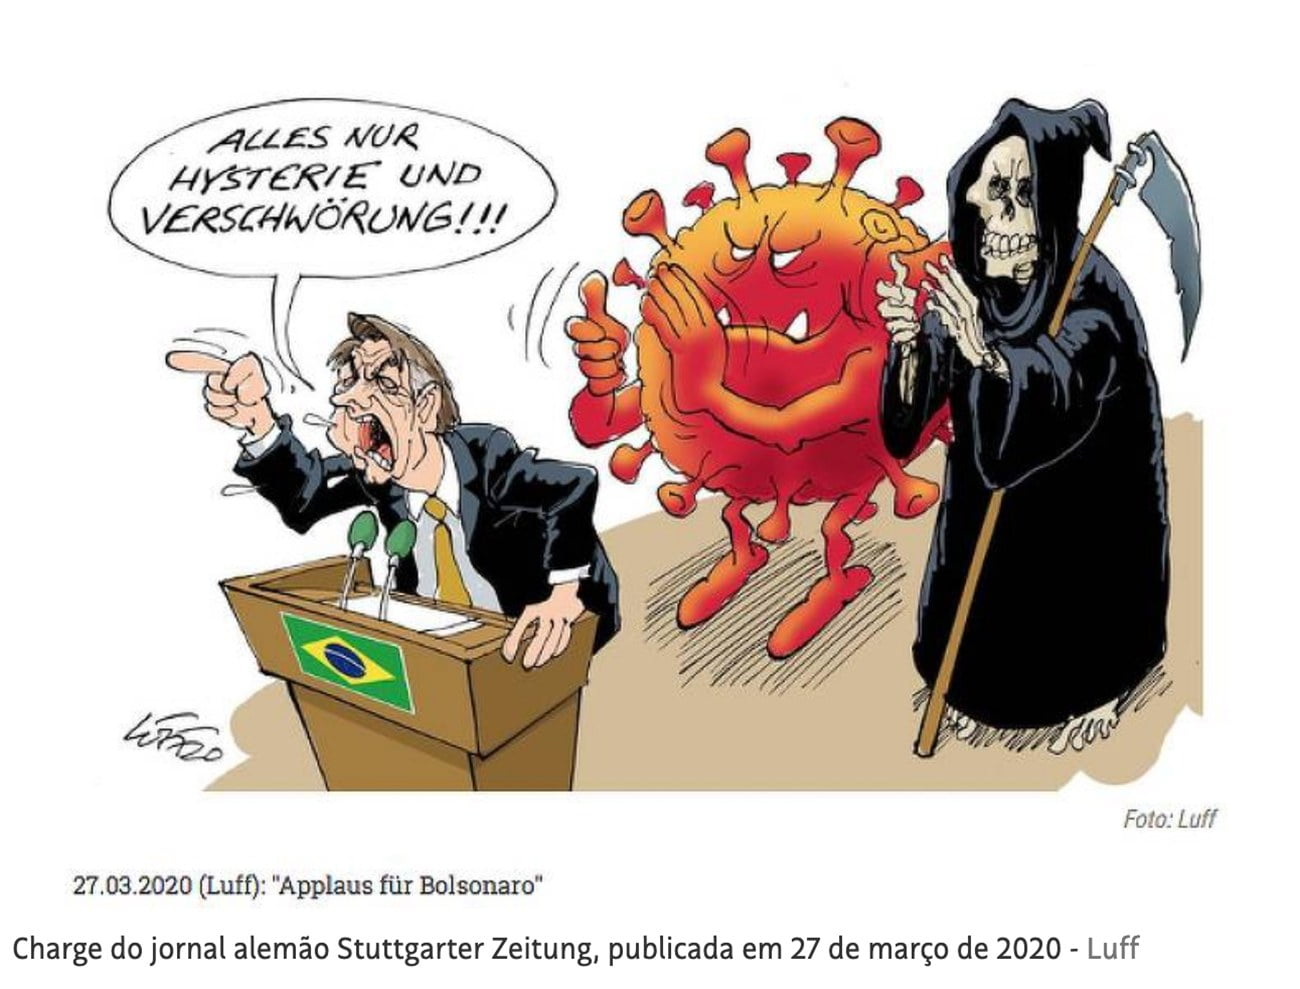 charge de jornal alemão sobre Bolsonaro e a covid-19